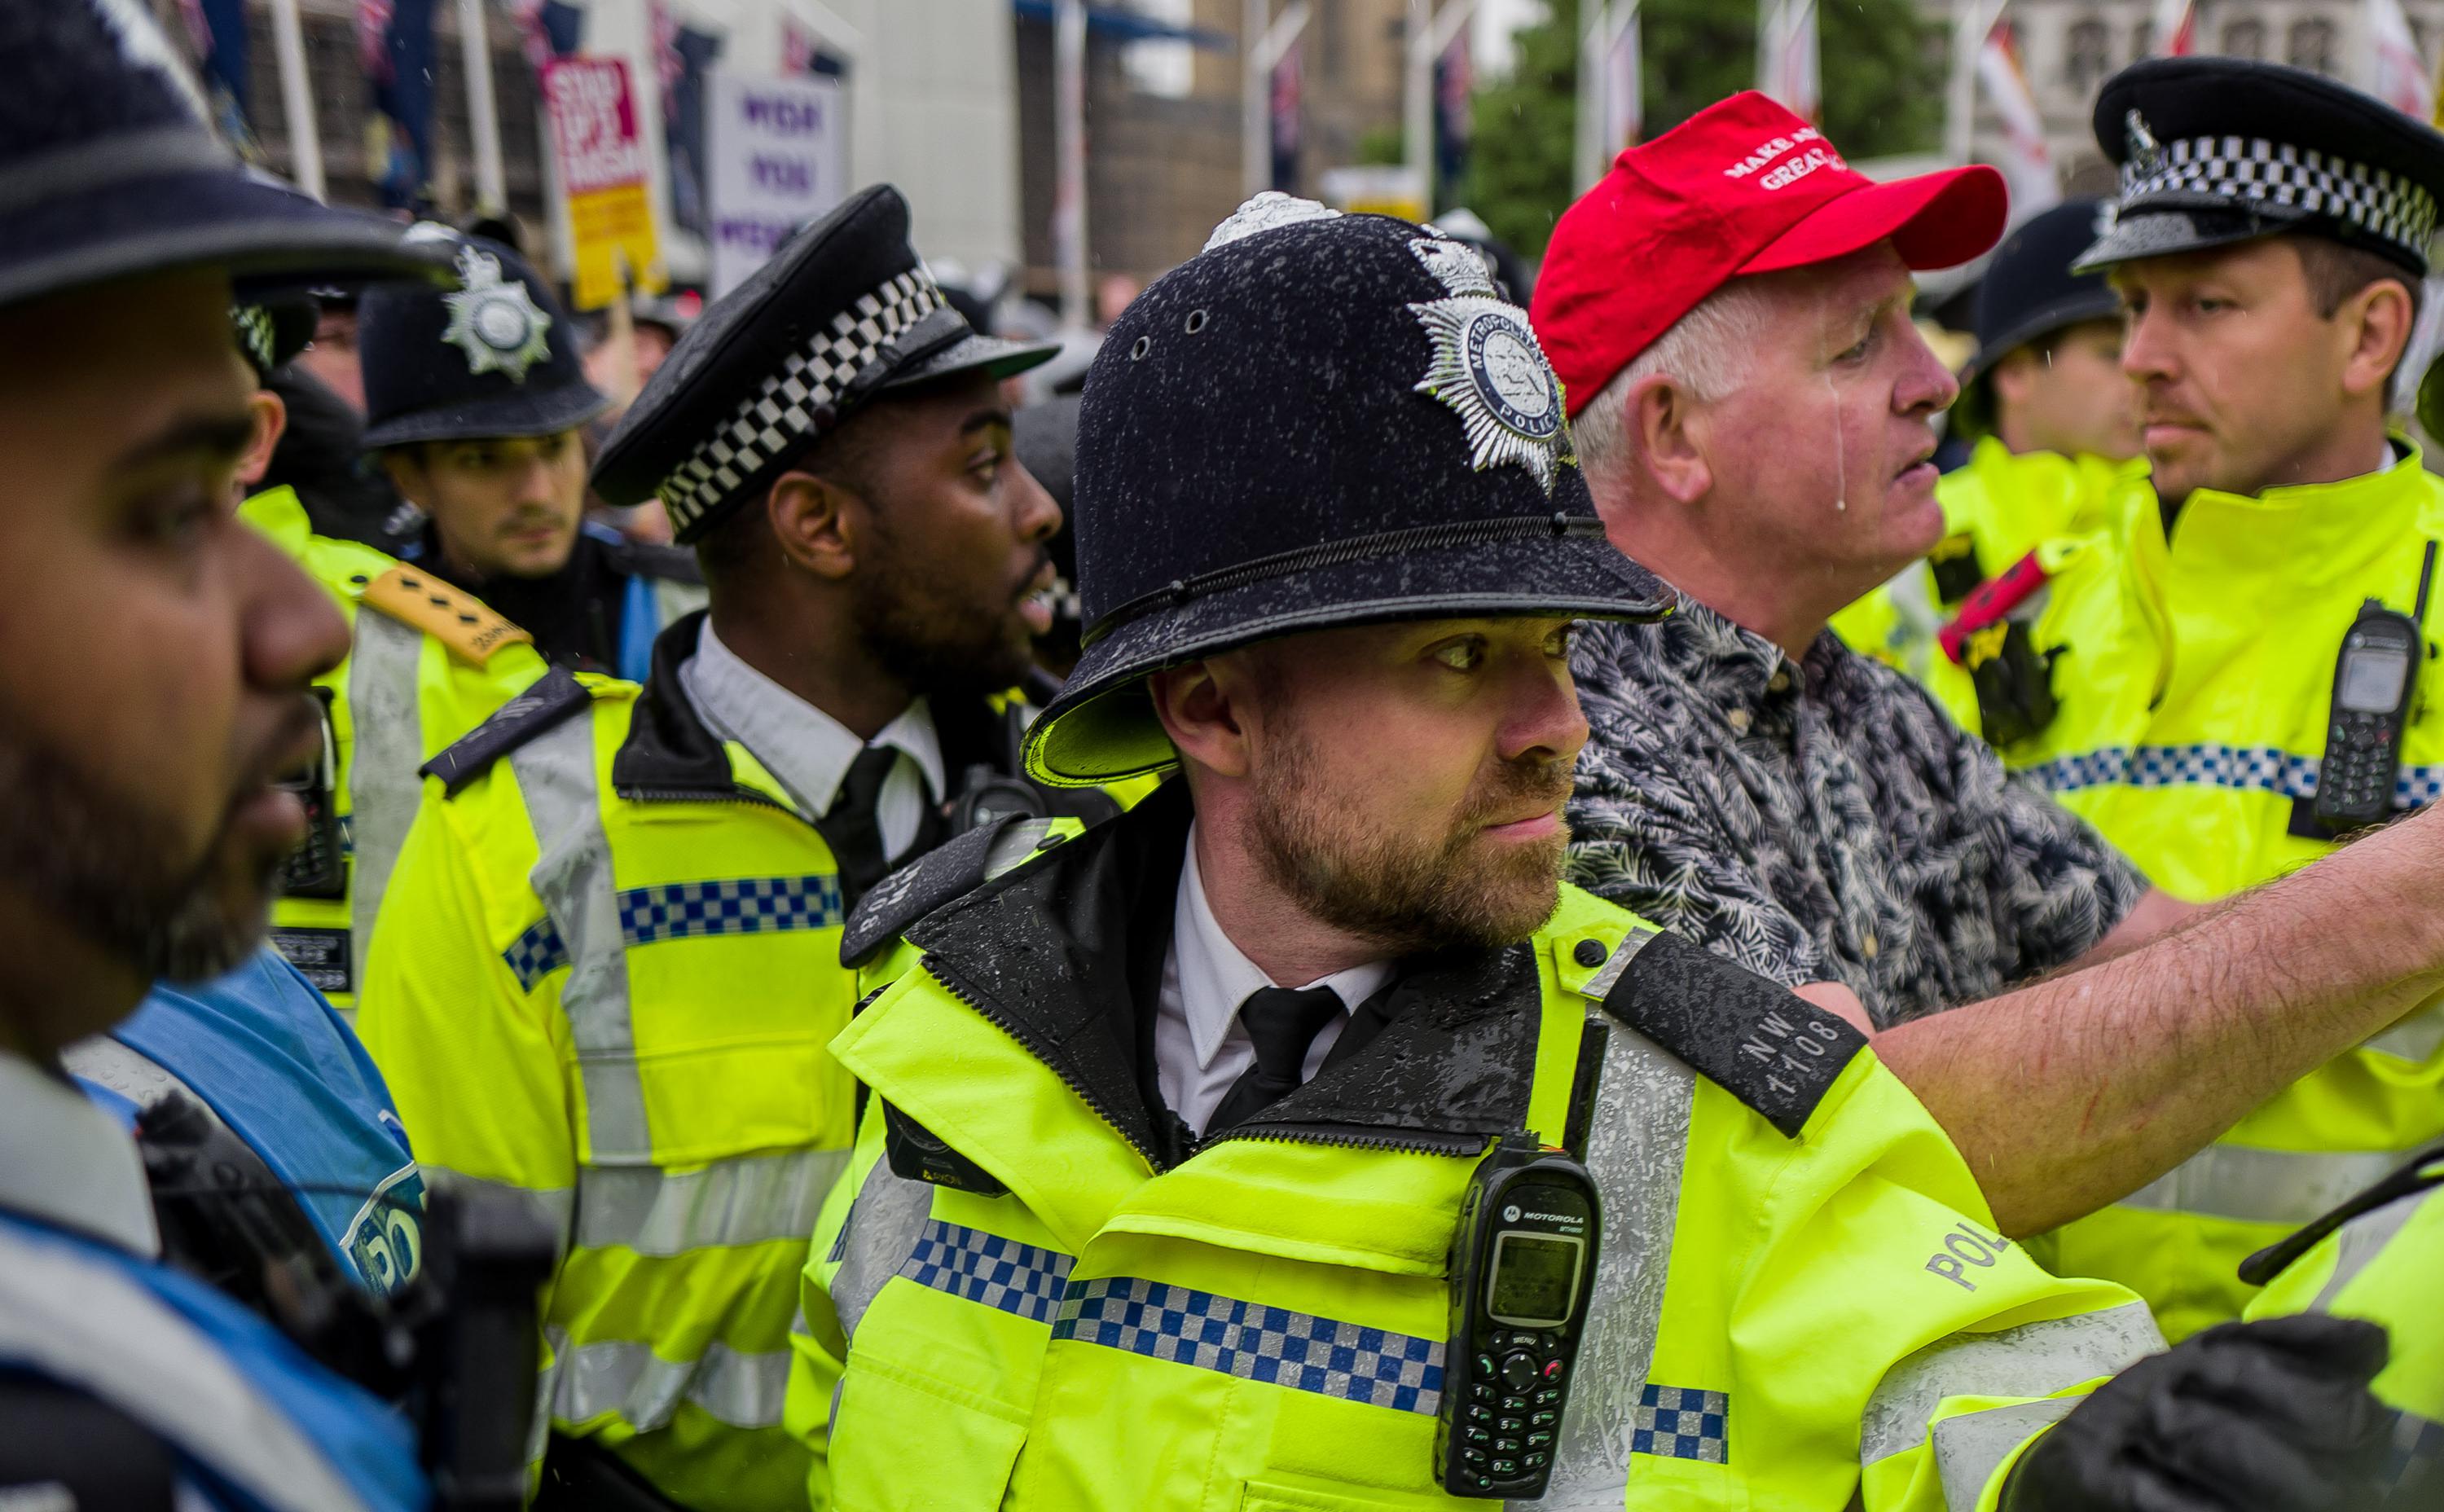 Times узнала о подготовке британской полиции к «экономическим протестам»"/>













